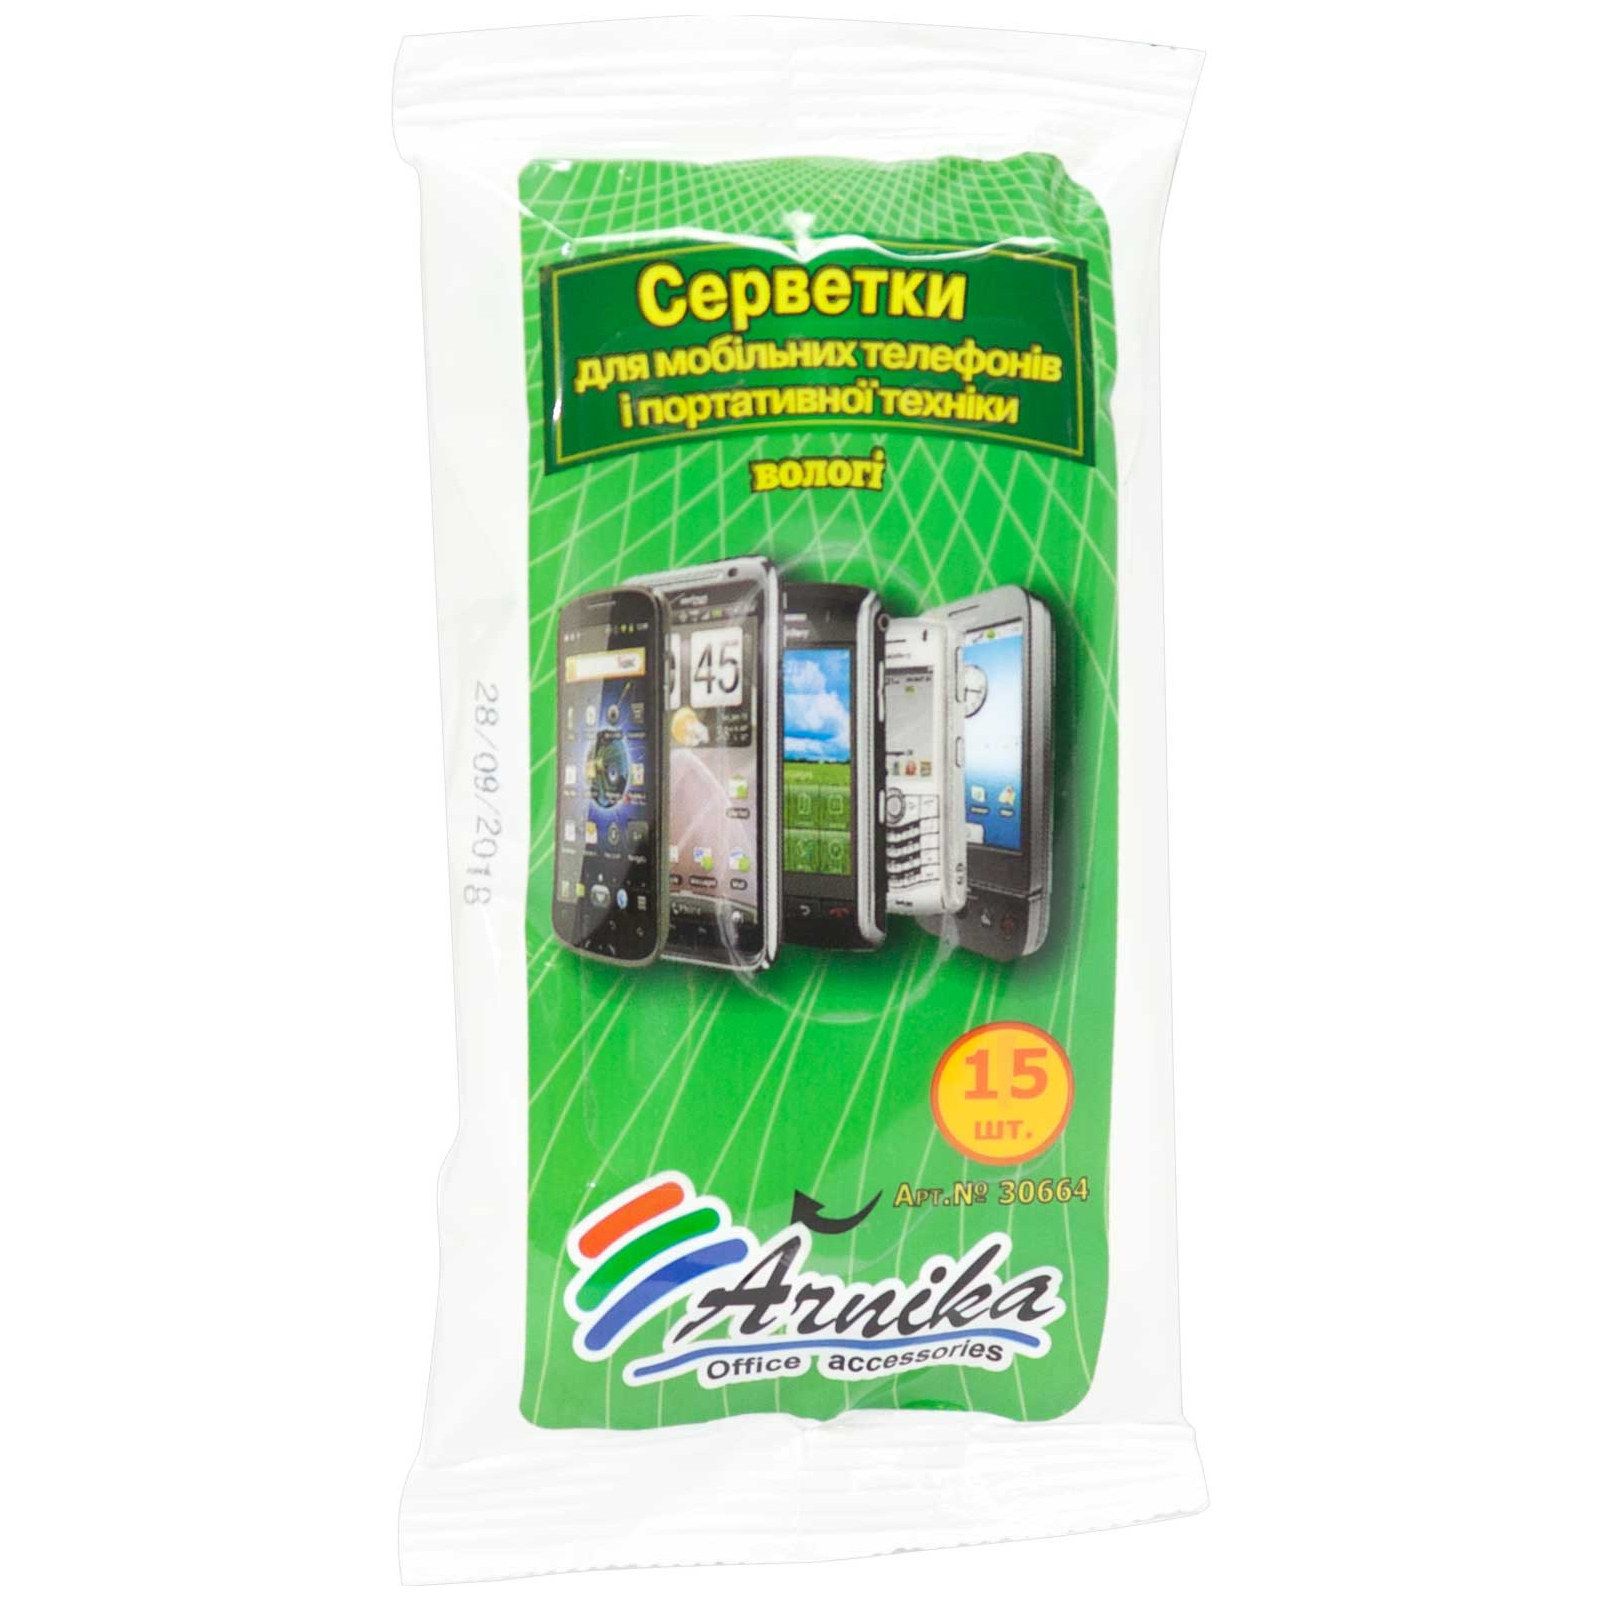 Серветки Arnika for mobile devices, 15шт (30664)